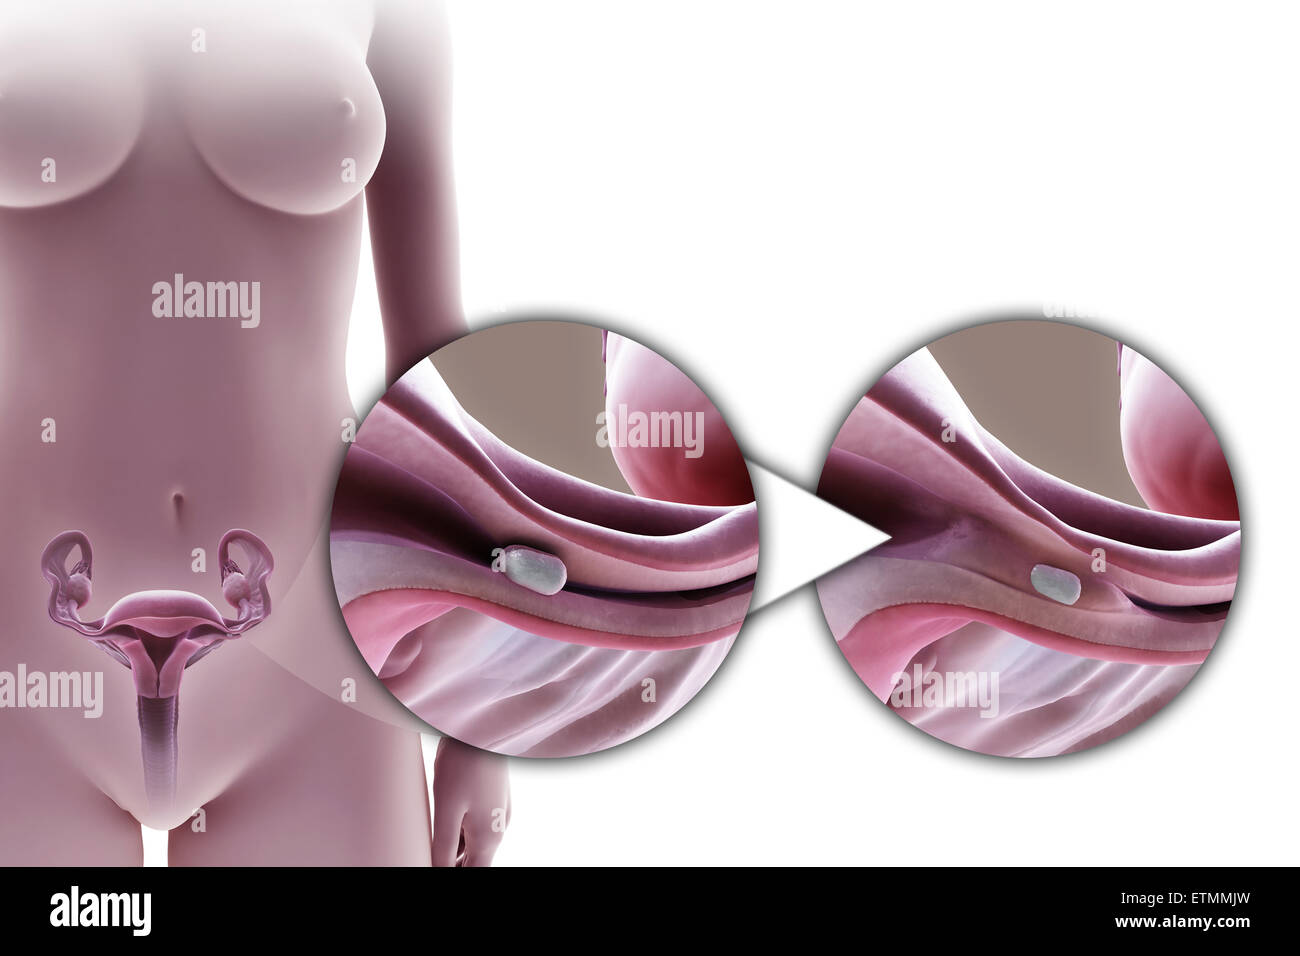 Illustration de la ligature des trompes de Fallope par la méthode d'un implant en silicone, utilisé pour bloquer le tube par la croissance de tissu cicatriciel et empêcher la fécondation. Banque D'Images